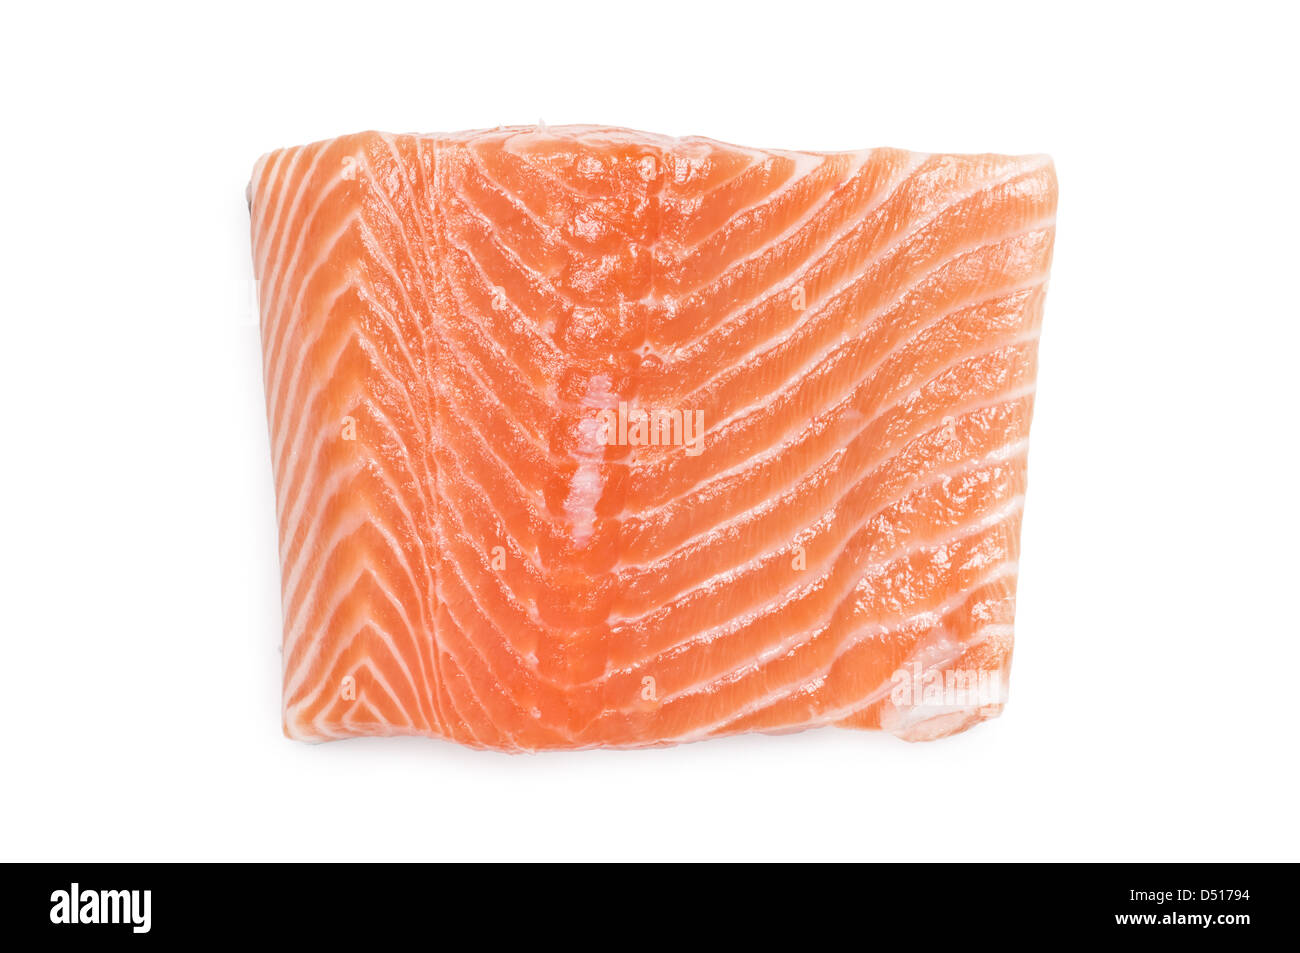 raw salmon filet isolated on white Stock Photo